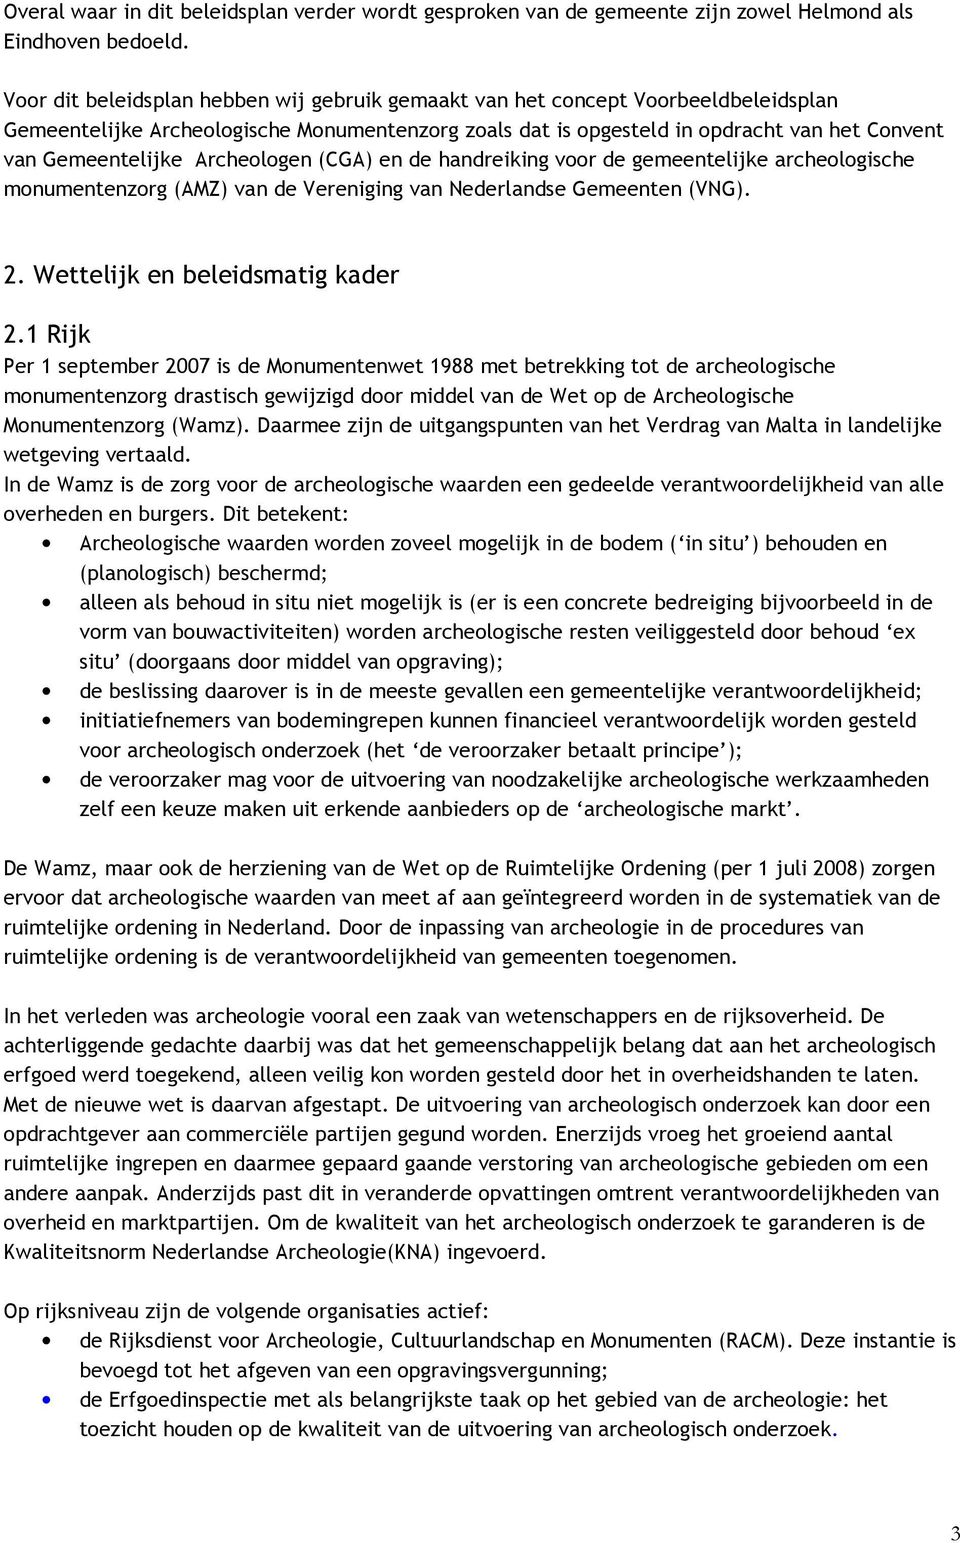 Archeologen (CGA) en de handreiking voor de gemeentelijke archeologische monumentenzorg (AMZ) van de Vereniging van Nederlandse Gemeenten (VNG). 2. Wettelijk en beleidsmatig kader 2.